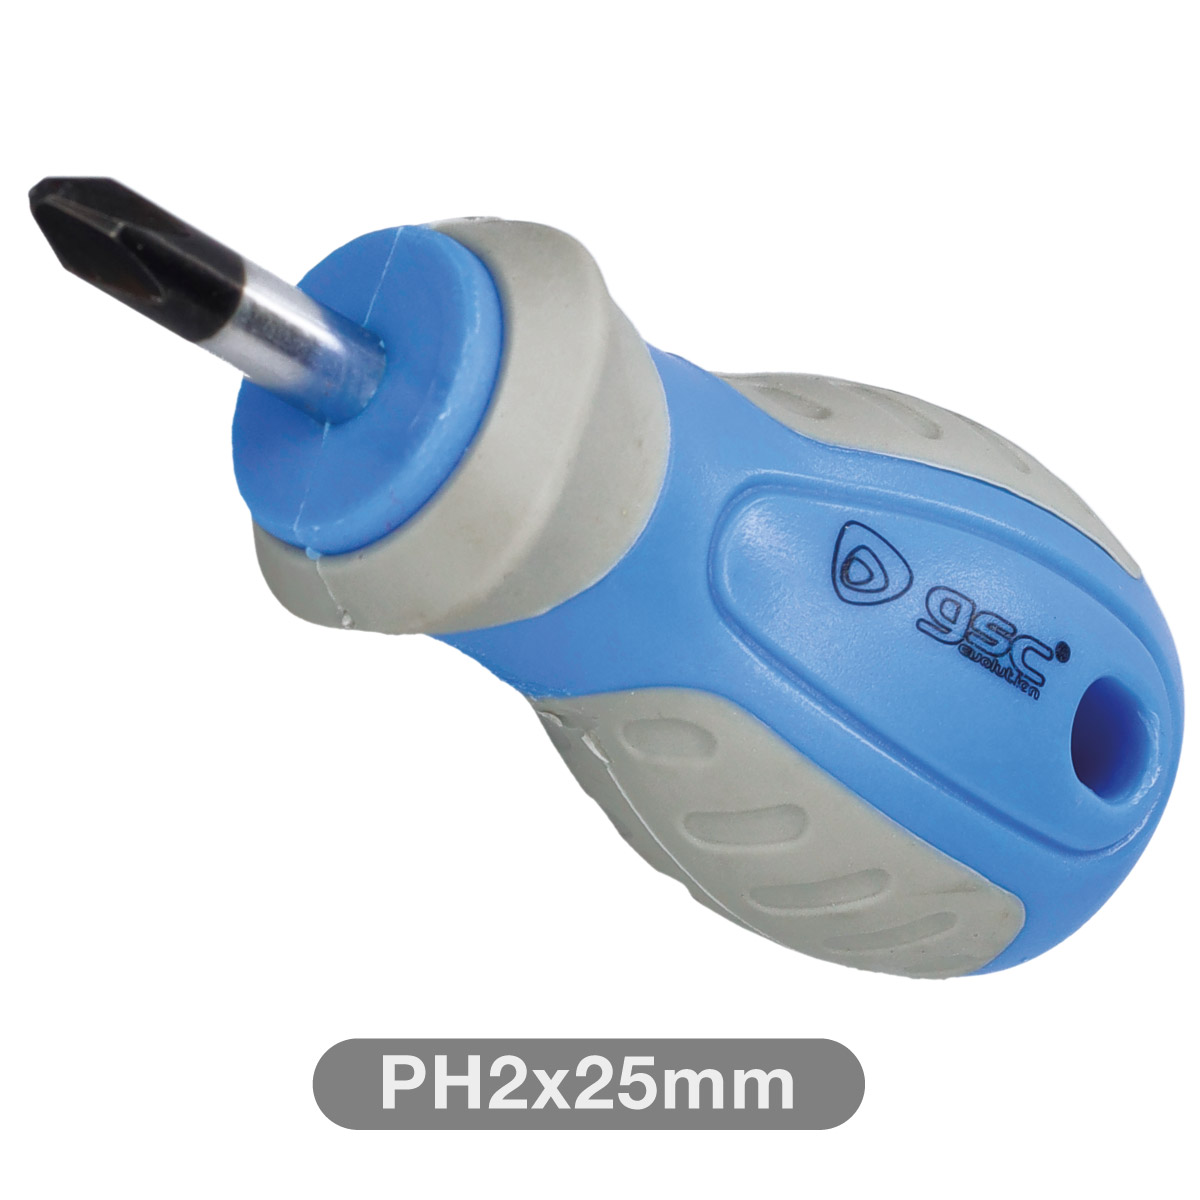 Destornillador Philips corto PH2x25mm